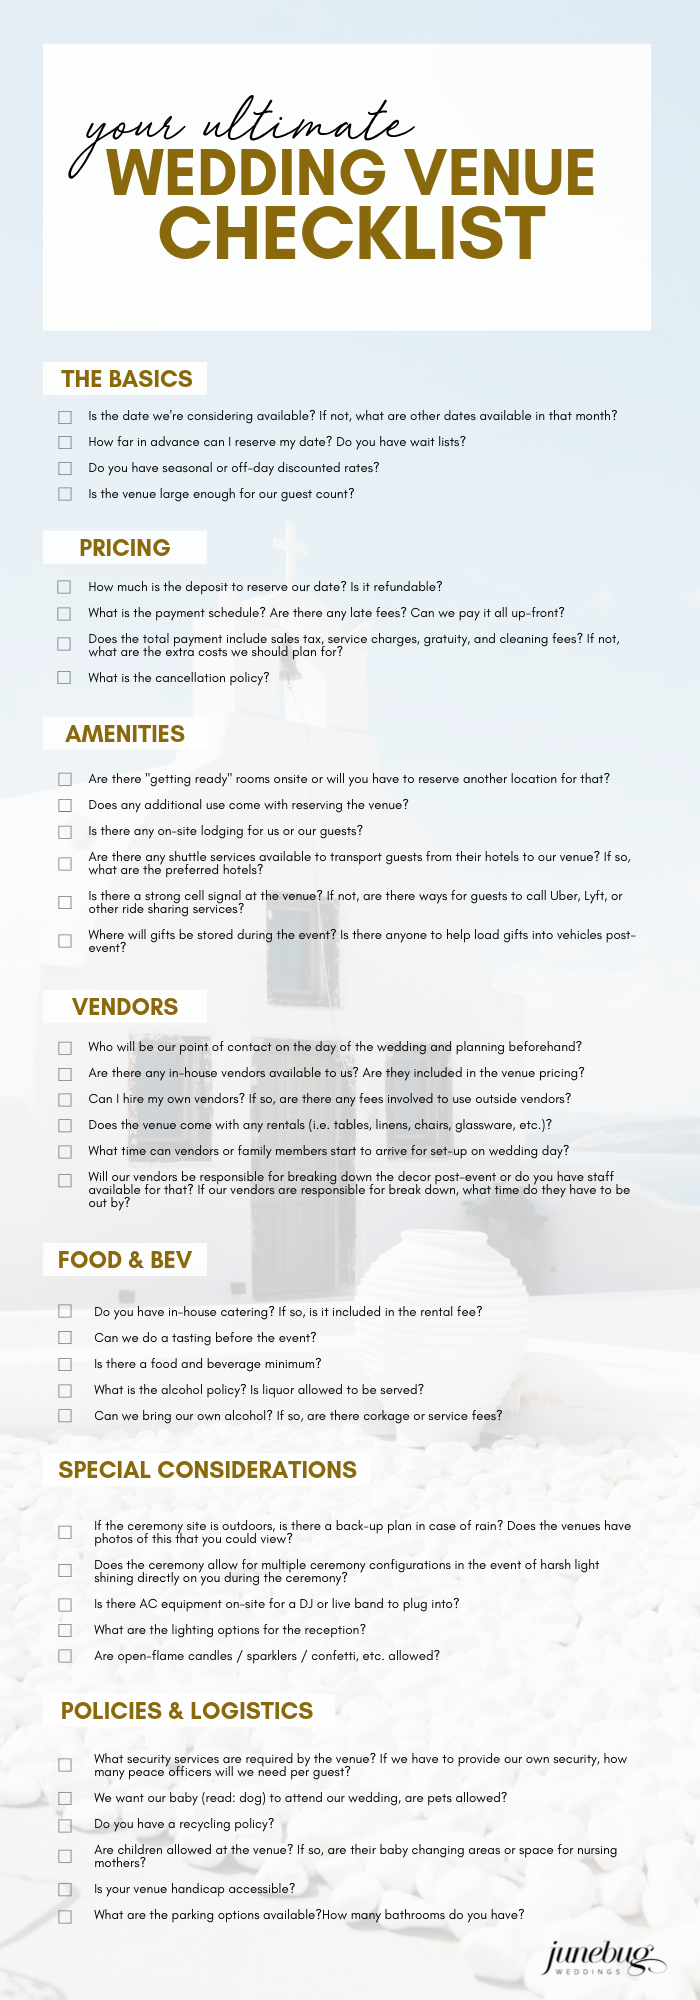 wedding venue checklist pdf